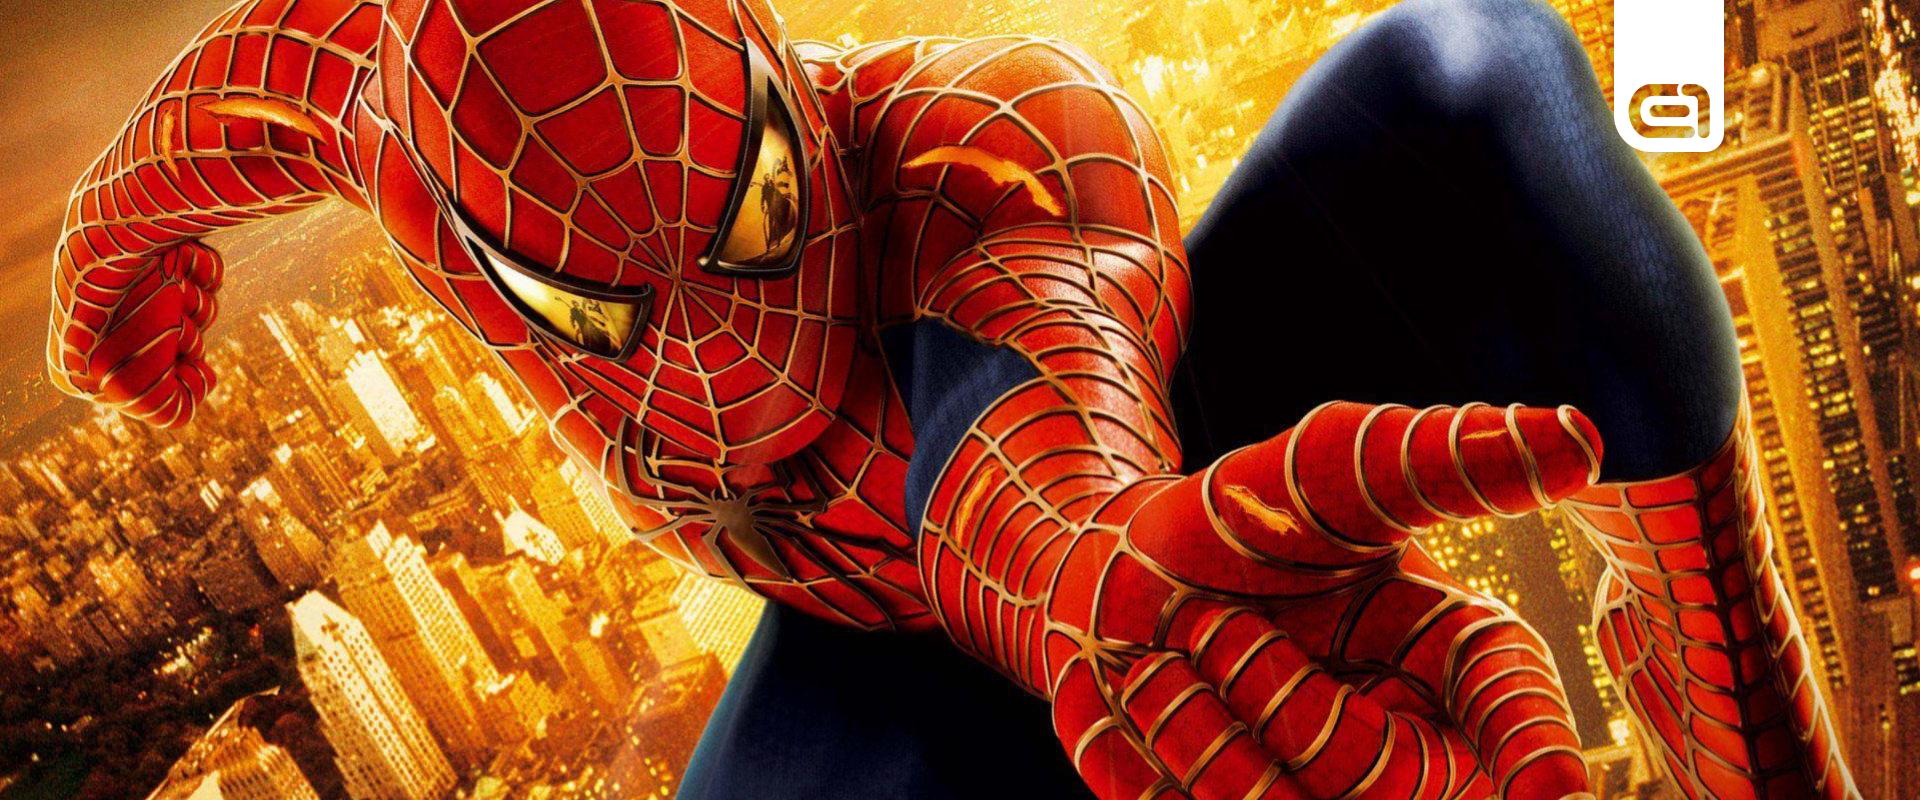 19 éves minden idők egyik legjobb Pókember-játéka, amitől még a Marvel's Spider-Man is csent el trükköket